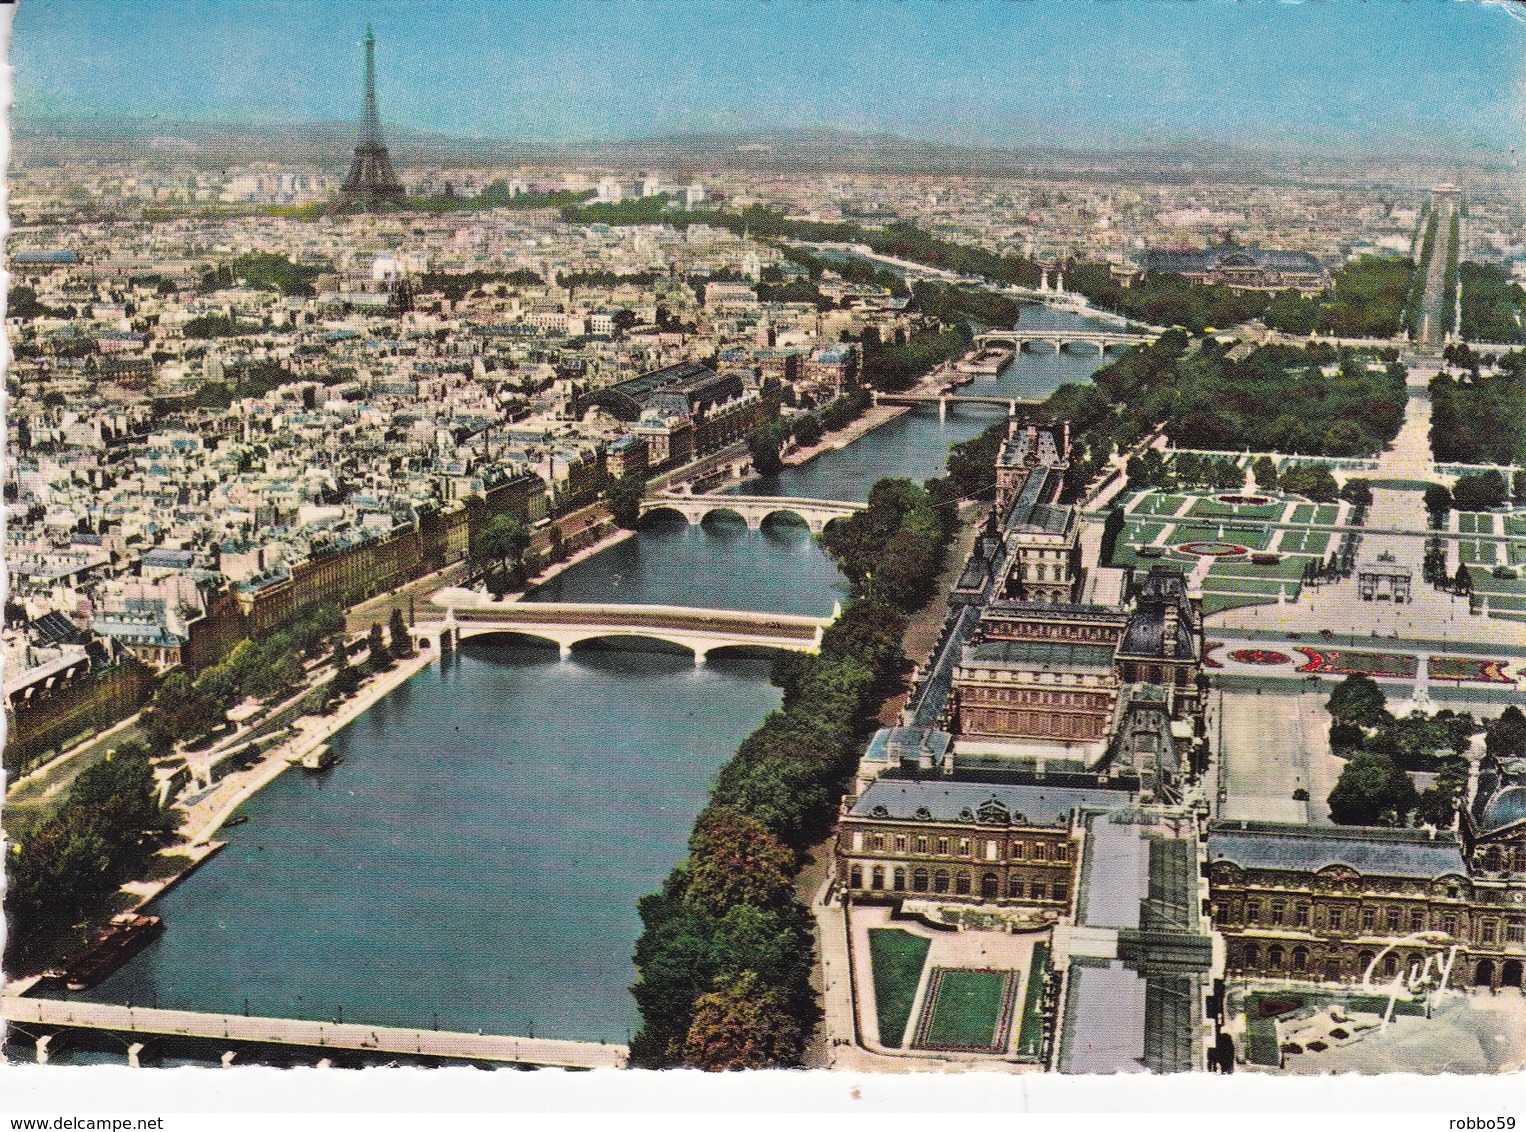 France Paris Aerial View Postcard Paris Du Louvre 1987 Postmark And Slogan Used Good Condition - Sacré Coeur